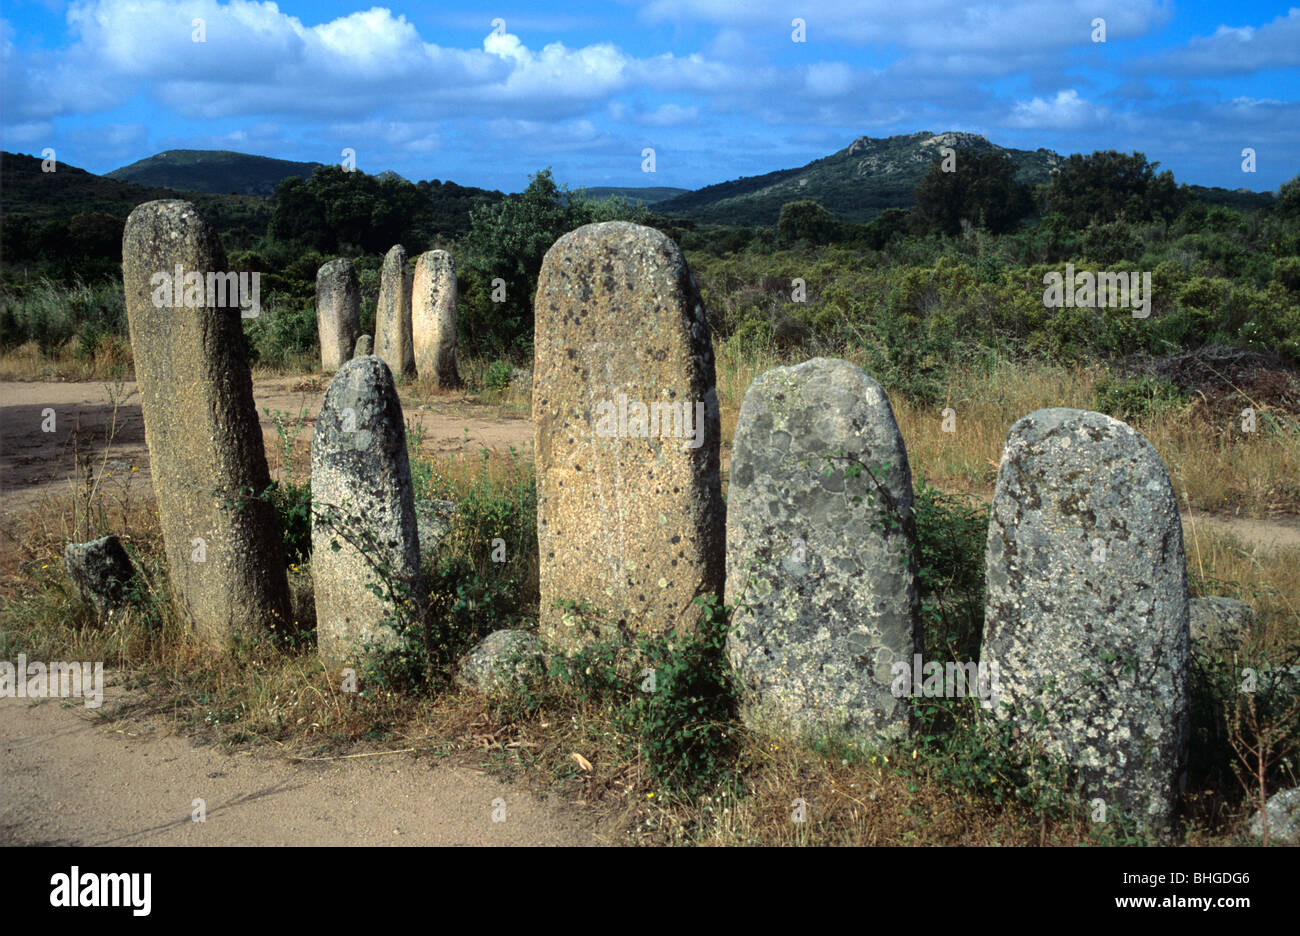 Megalithische Ausrichtung von prähistorischen Stehsteinen oder Menhiren in Palaghju, aka Palaggiu oder Pagliajo, in der Nähe von Tizzano, Sartene, Korsika, Frankreich Stockfoto